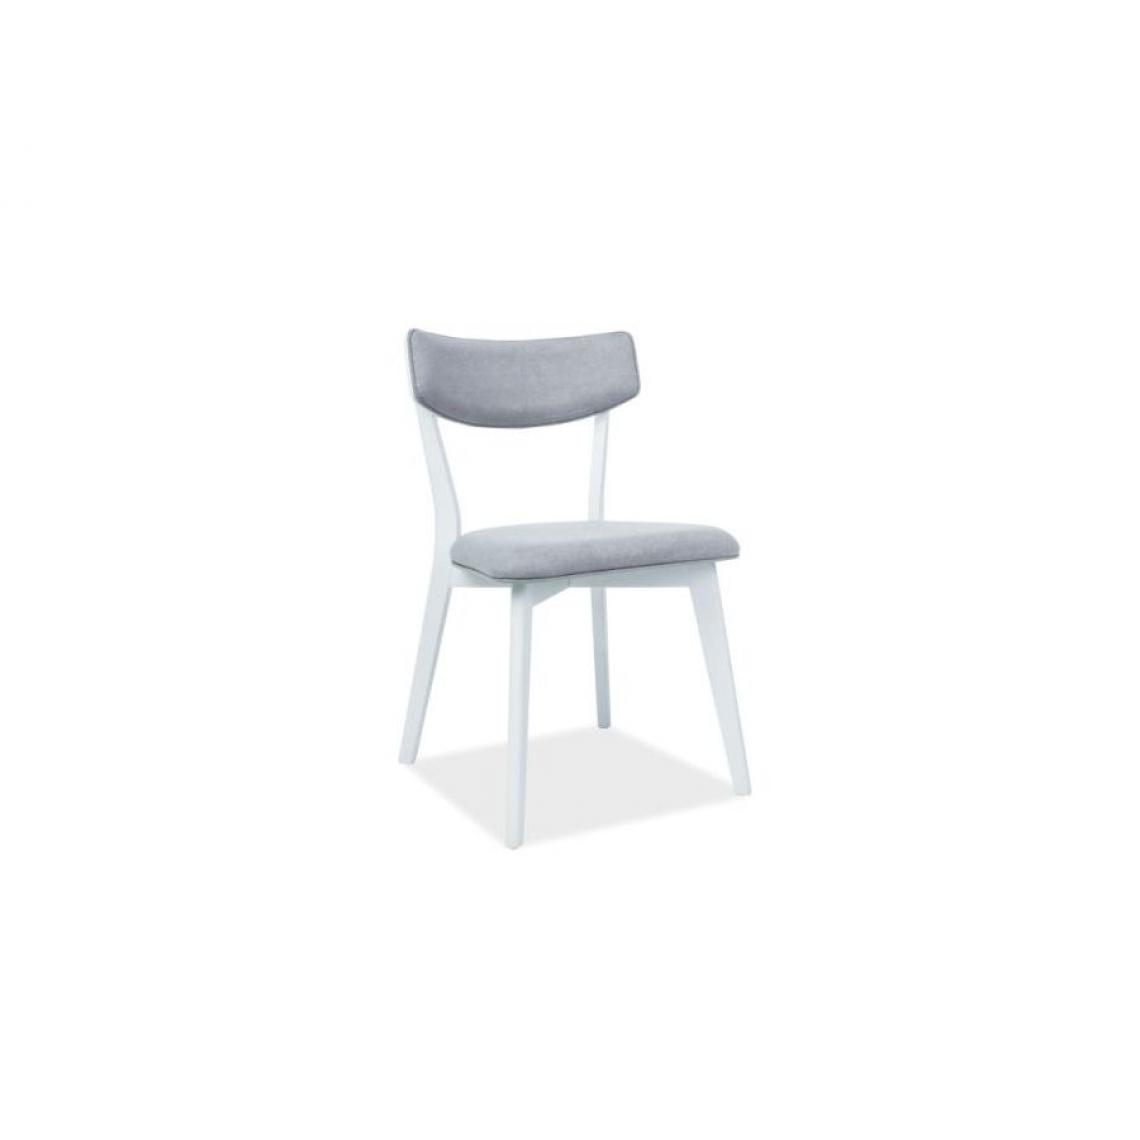 Hucoco - KARN | Magnifique chaise de forme classique style scandinave | 77x49x41 cm | Bois + tissu haute qualité | Chaise salle à manger - Gris - Chaises